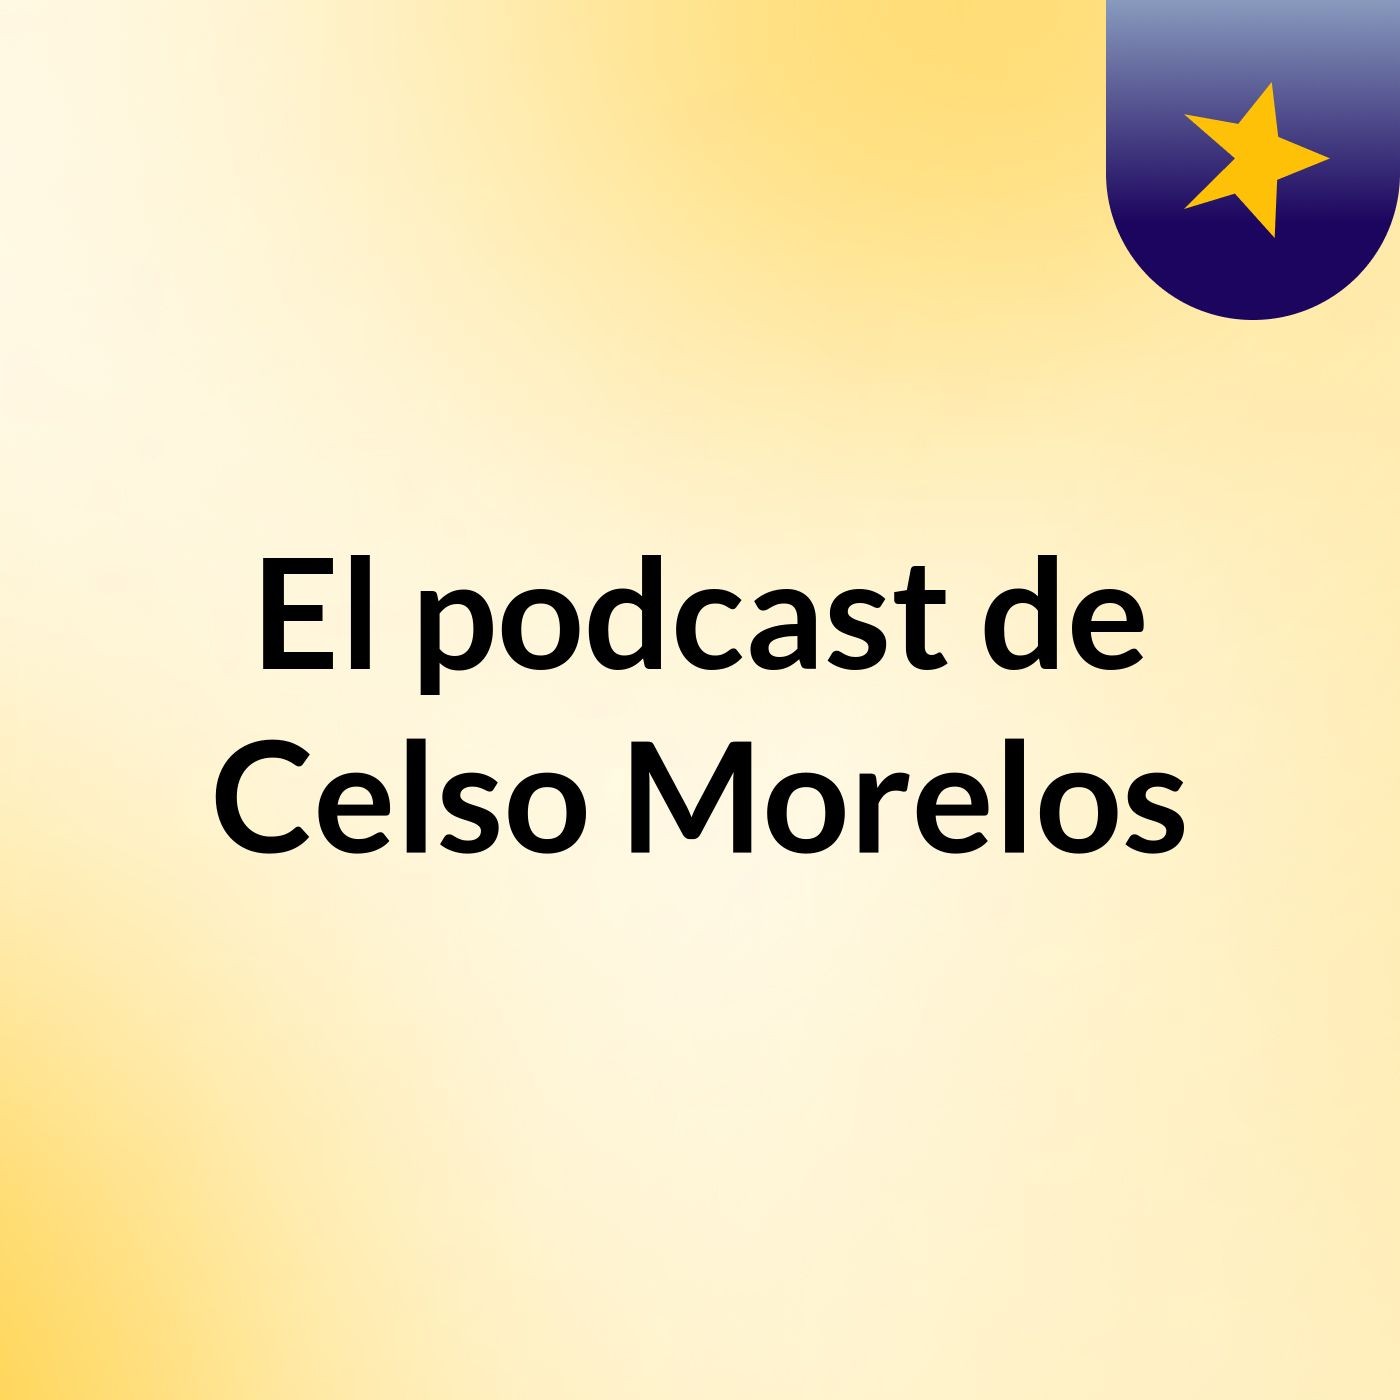 El podcast de Celso Morelos